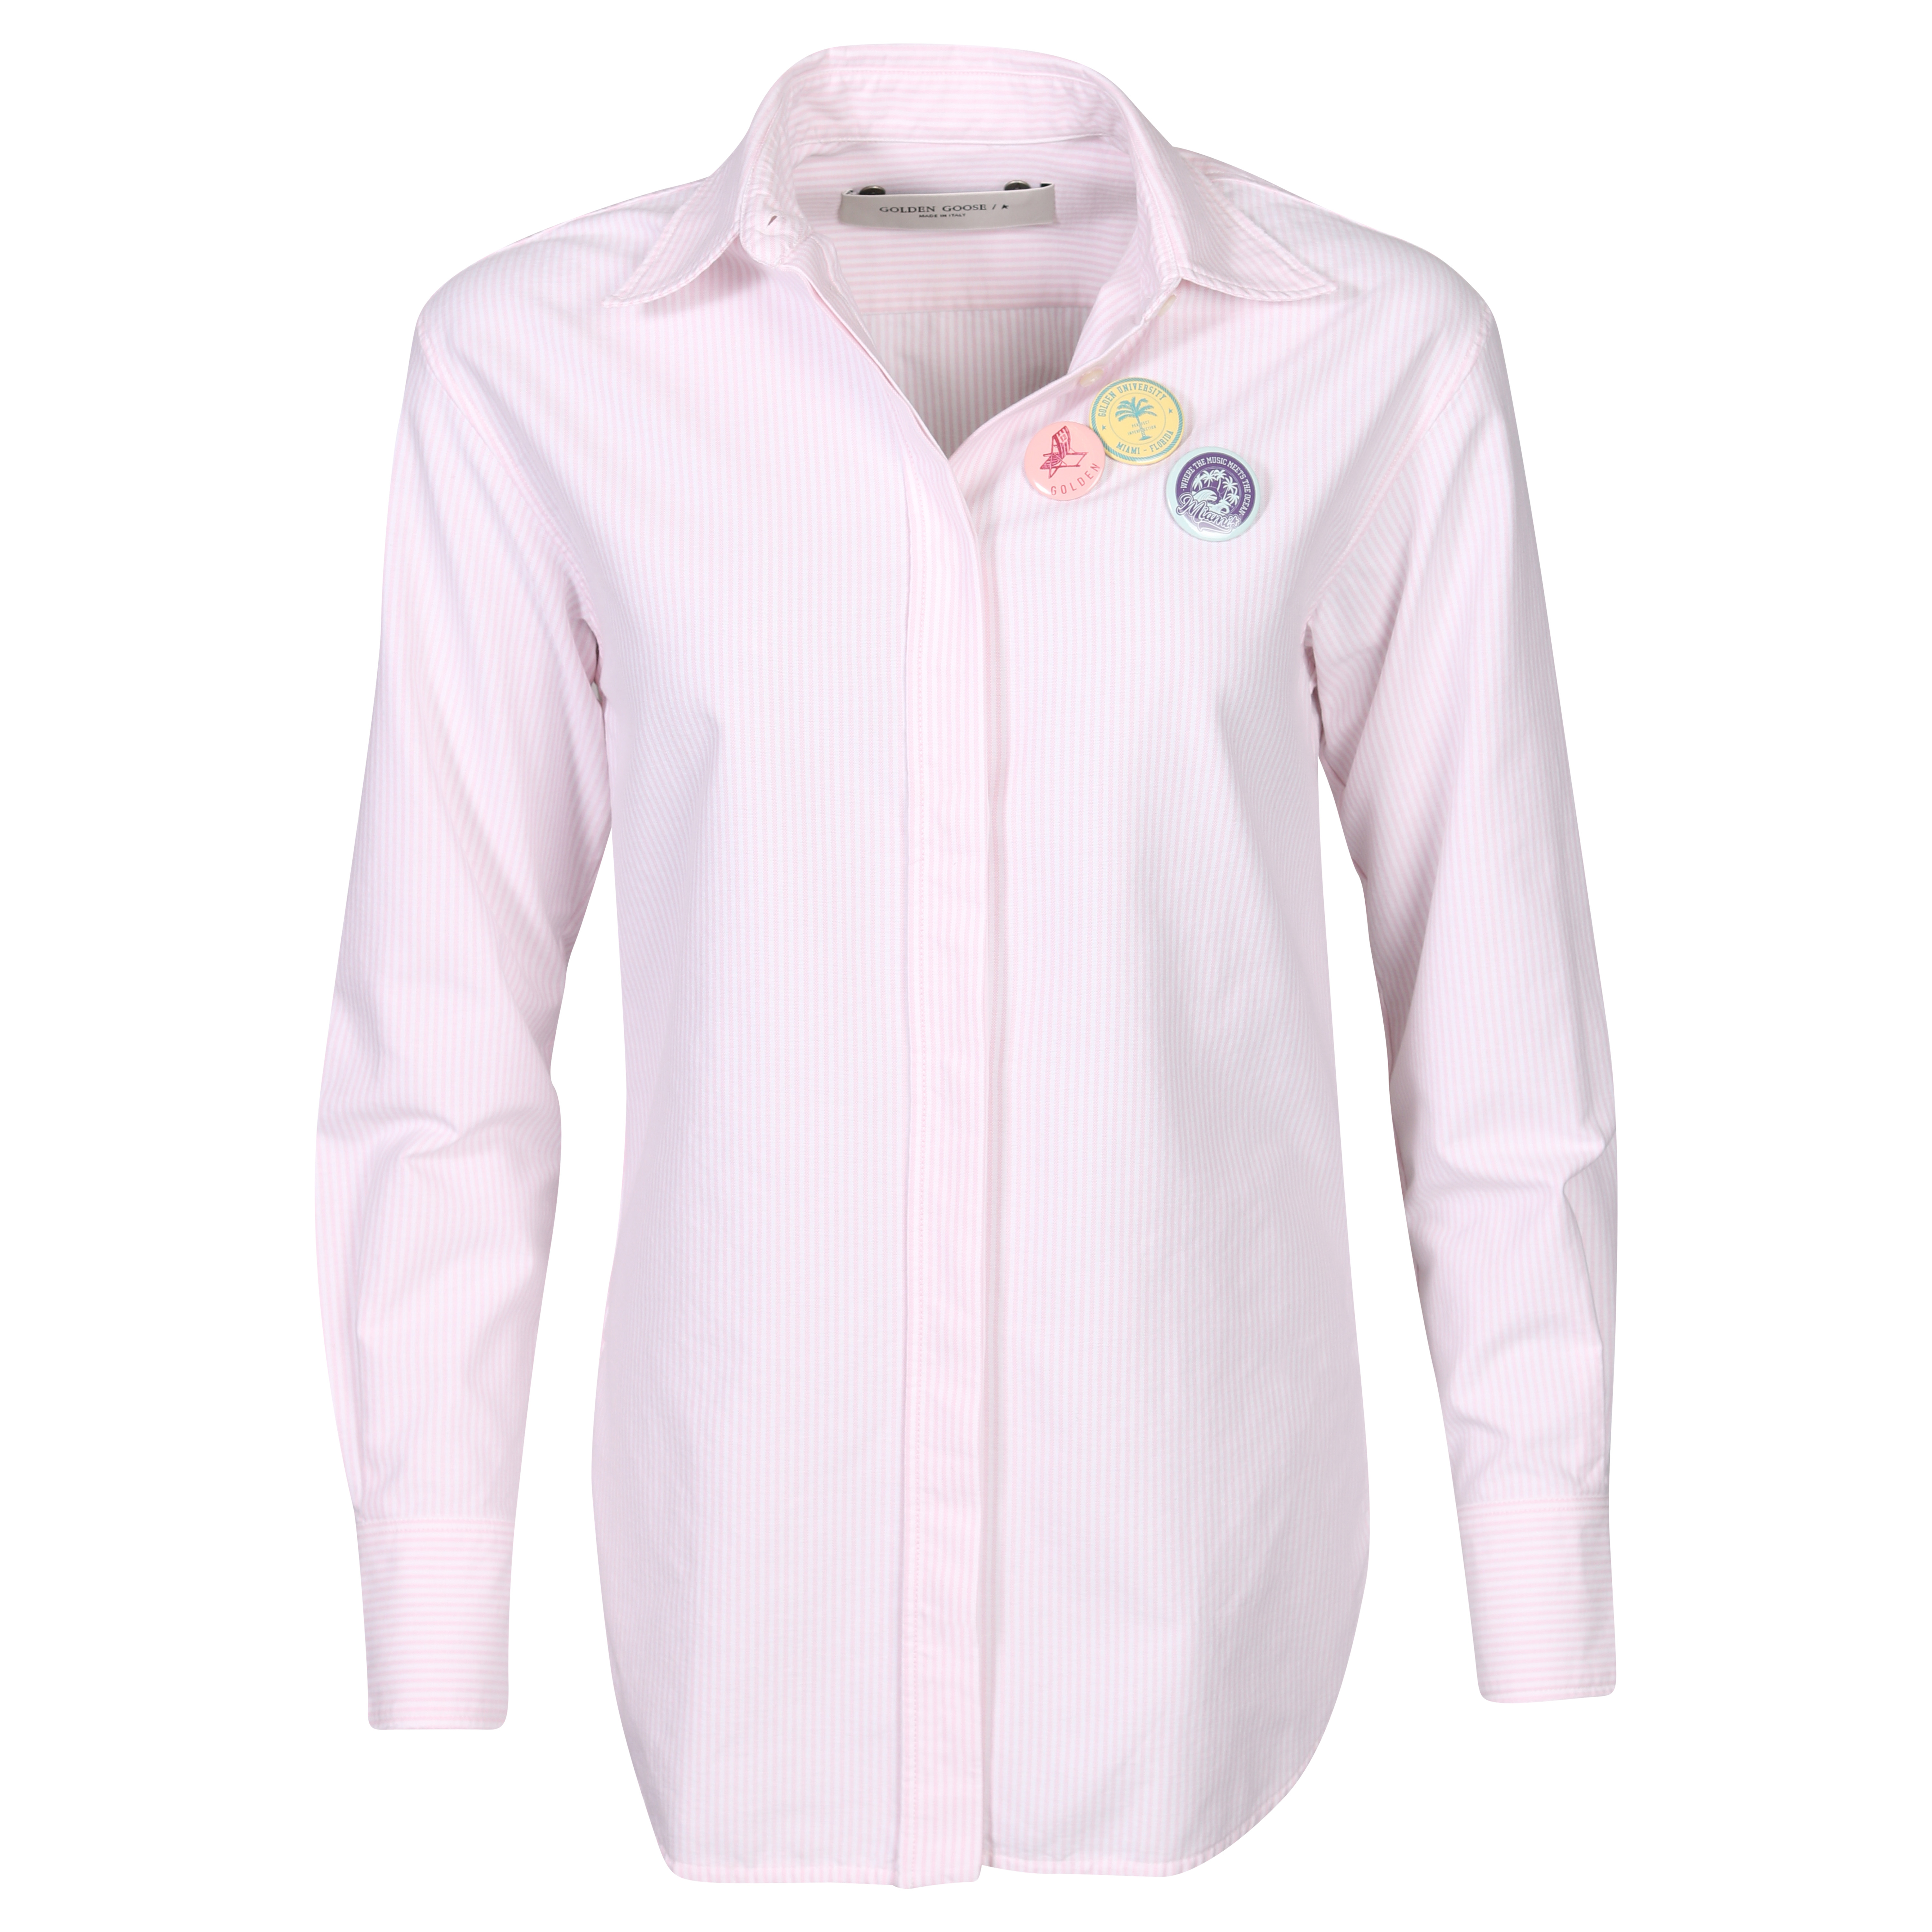 Golden Goose Journey Shirt Boyfriend Striped Oxford Cotton Pink/White M